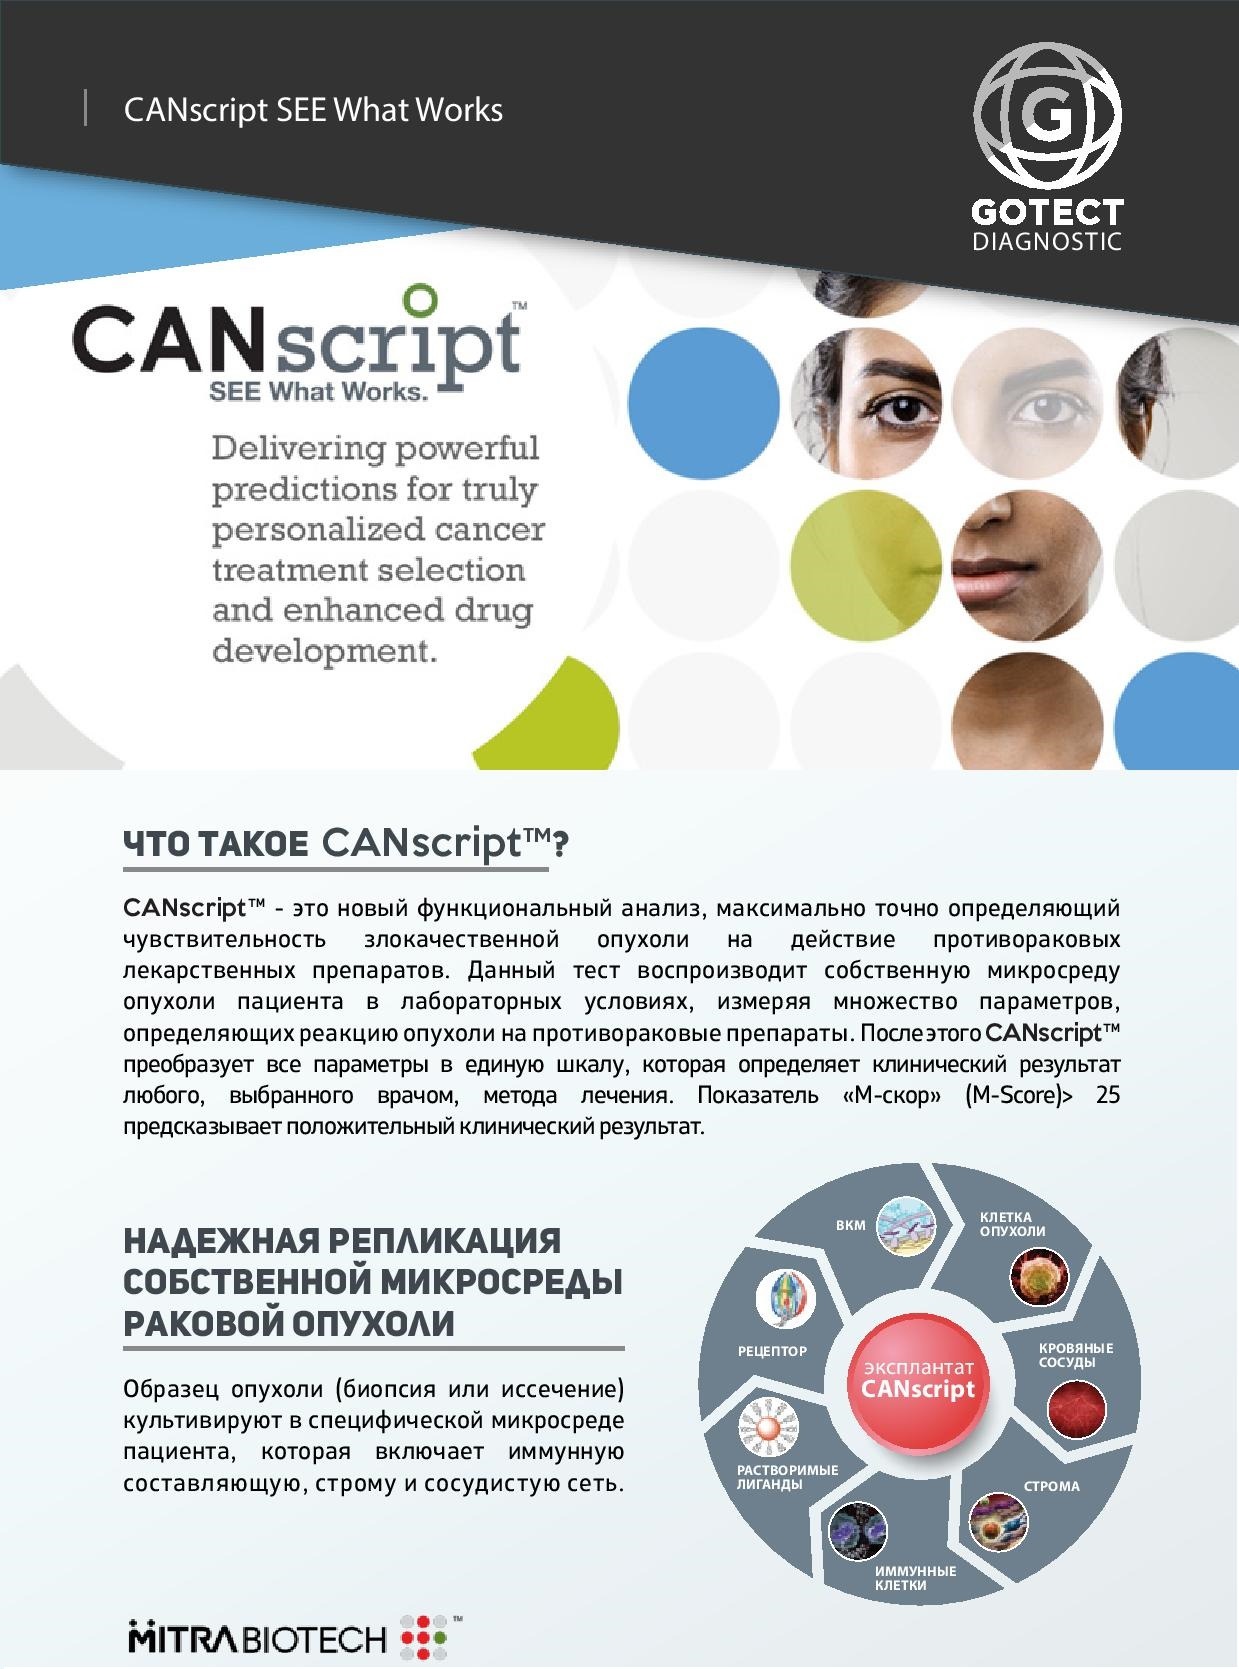 Онкотест CANscript - подбор эффективного персонального протокола лечения рака.